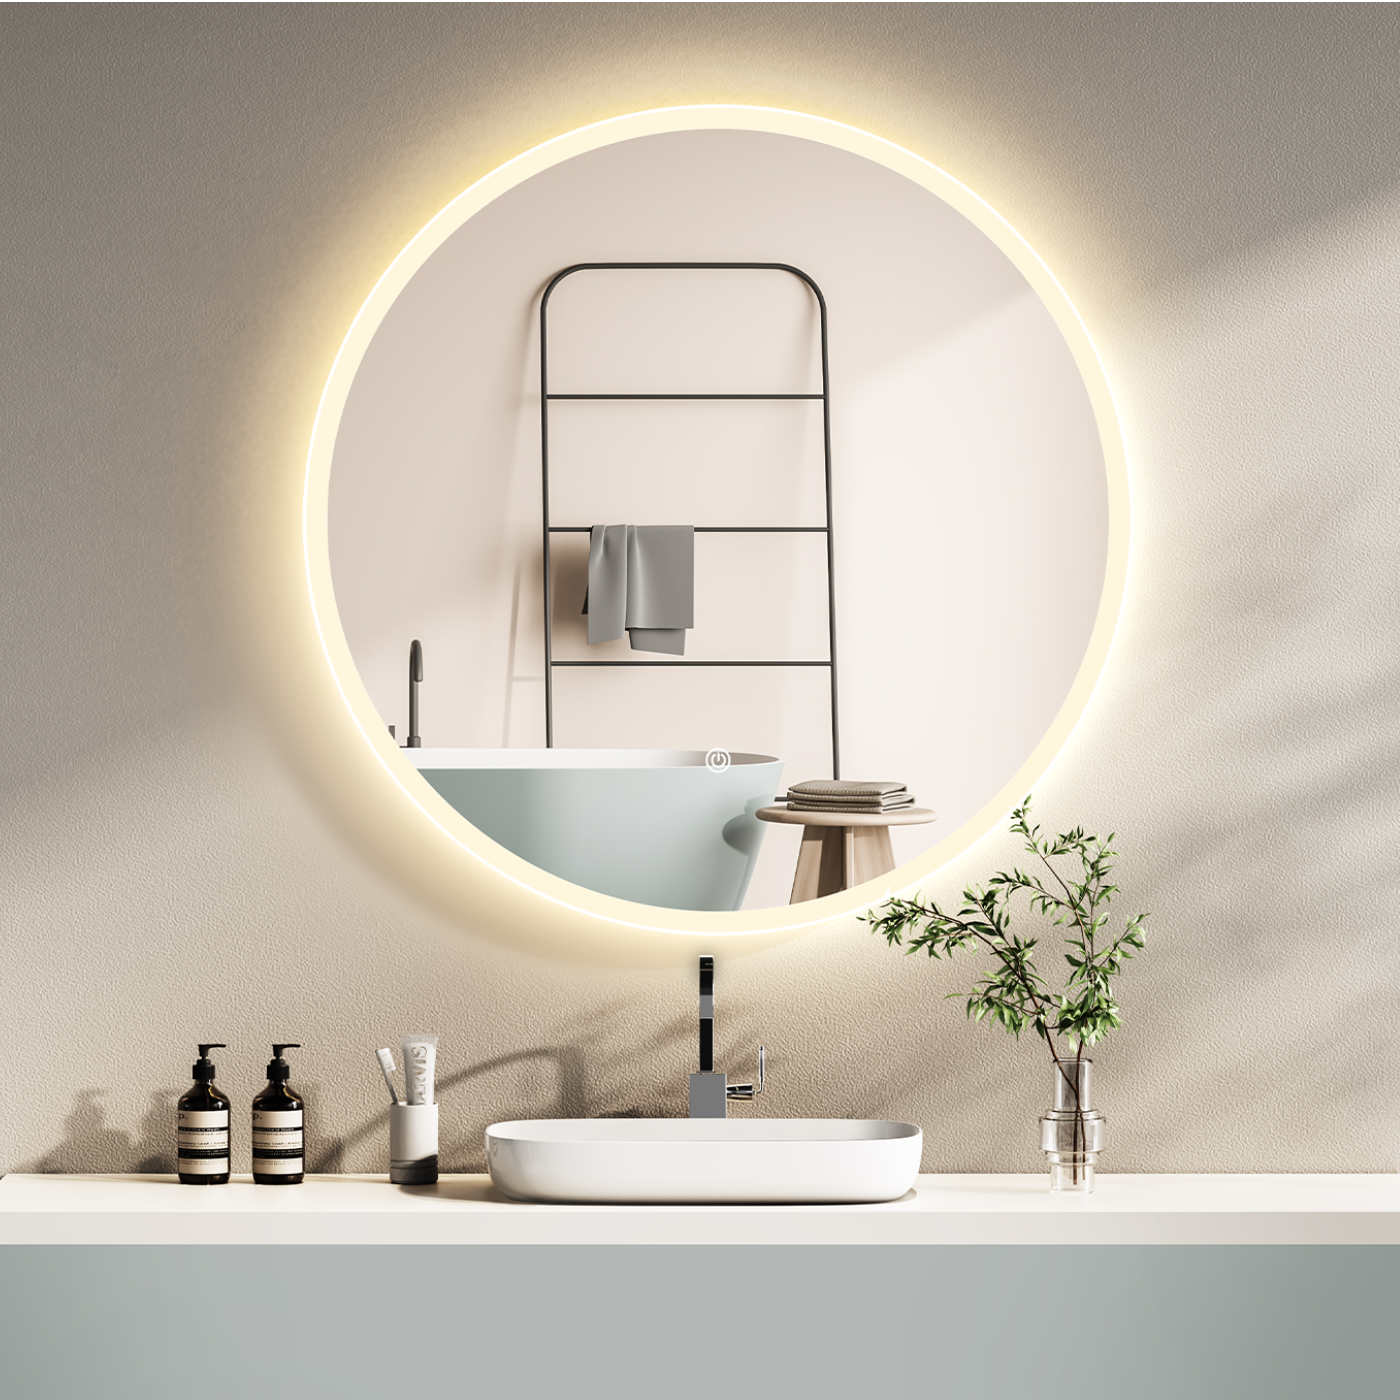 LED Badspiegel, design runder Badspiegel, Badspiegel mit led Beleuchtung